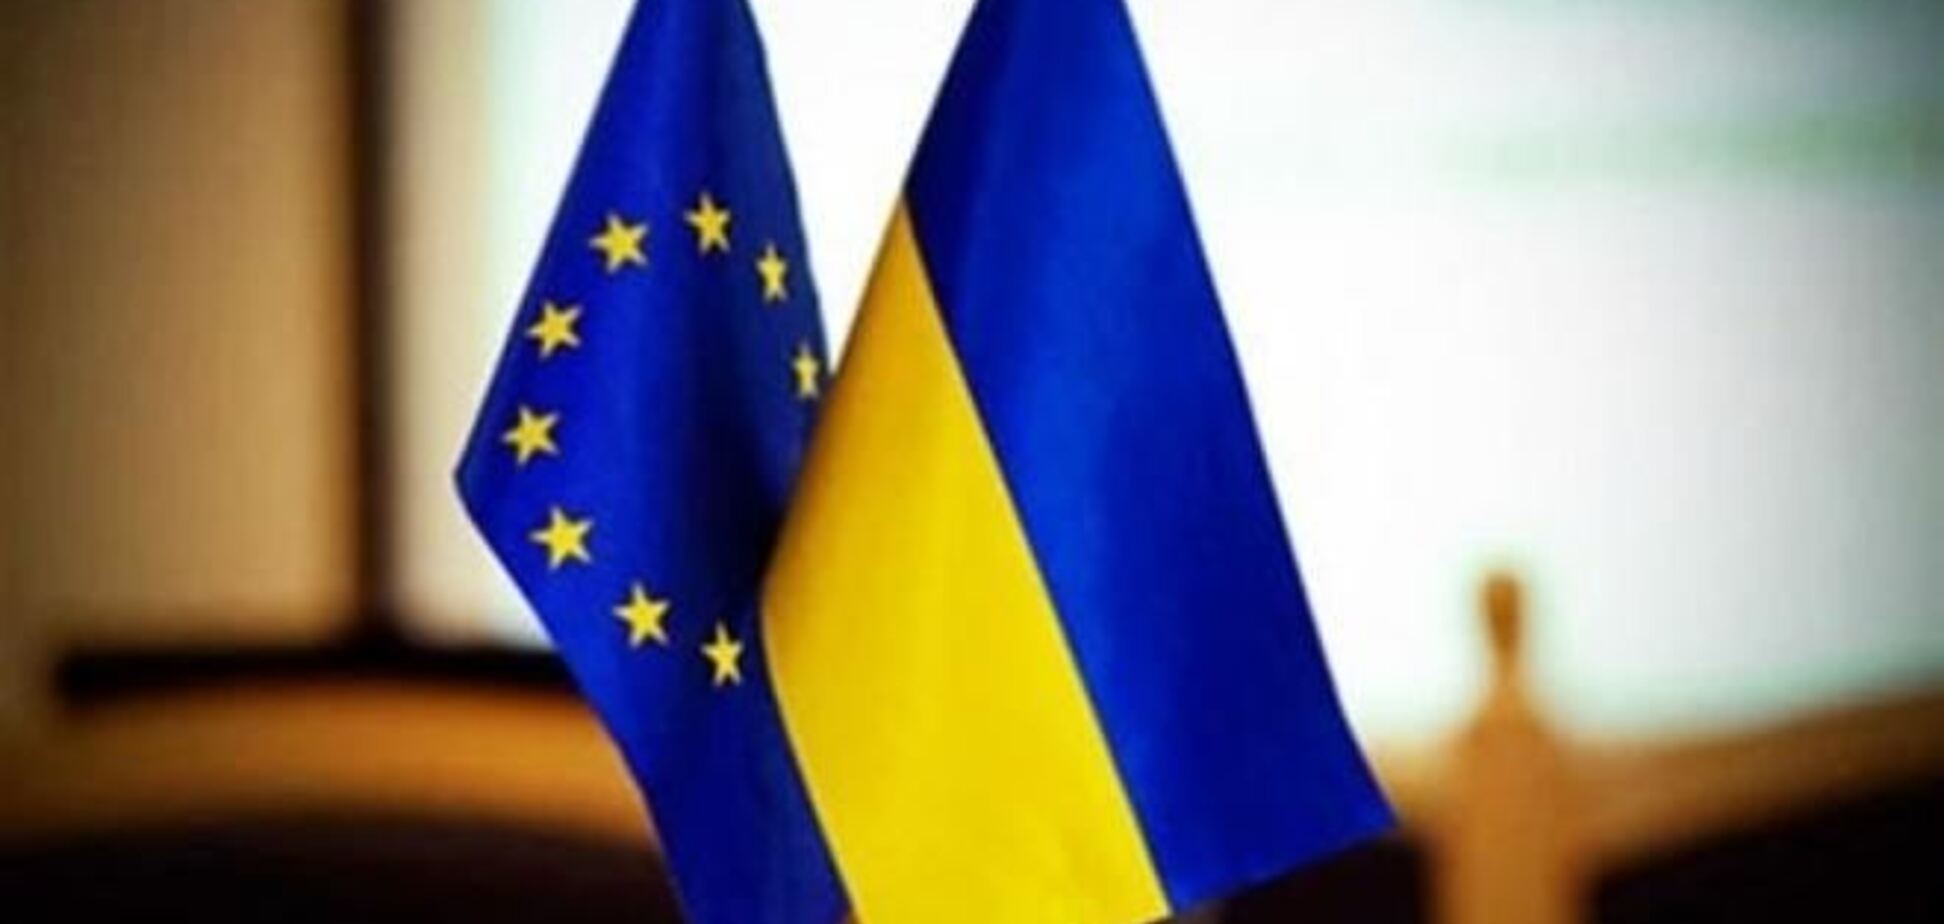 Арбузов и Томбински обсудили дальнейшую евроинтеграцию Украины